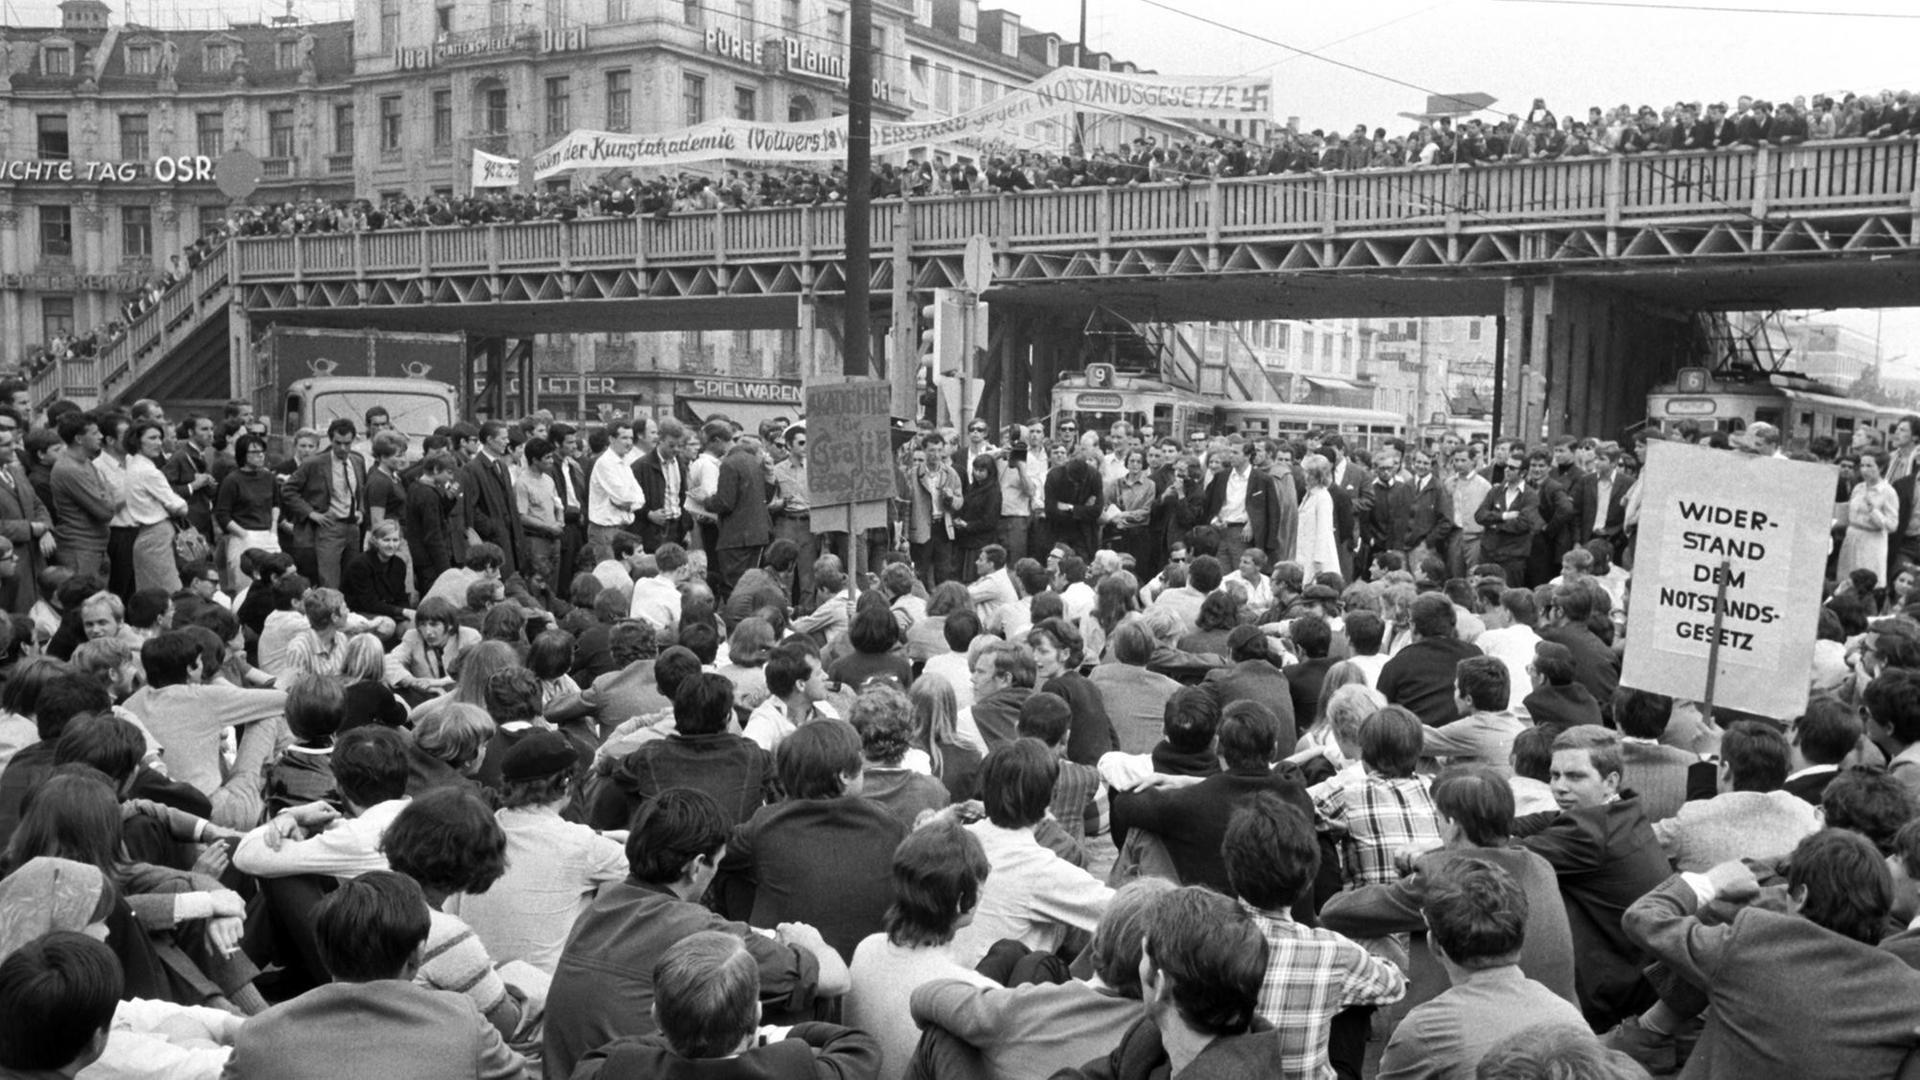 Dichtgedrängt stehen Demonstranten auf der Fußgänger-Notbrücke über dem Münchner Stachus; die Straßenbahnen wurden von den sitzenden Demonstranten blockiert. Am 29.05.1968, dem Vortag der dritten Lesung der Notstandsgesetze im Bonner Bundestag, demonstrierten in München tausende Studenten, Schüler, Arbeiter und Angestellte.